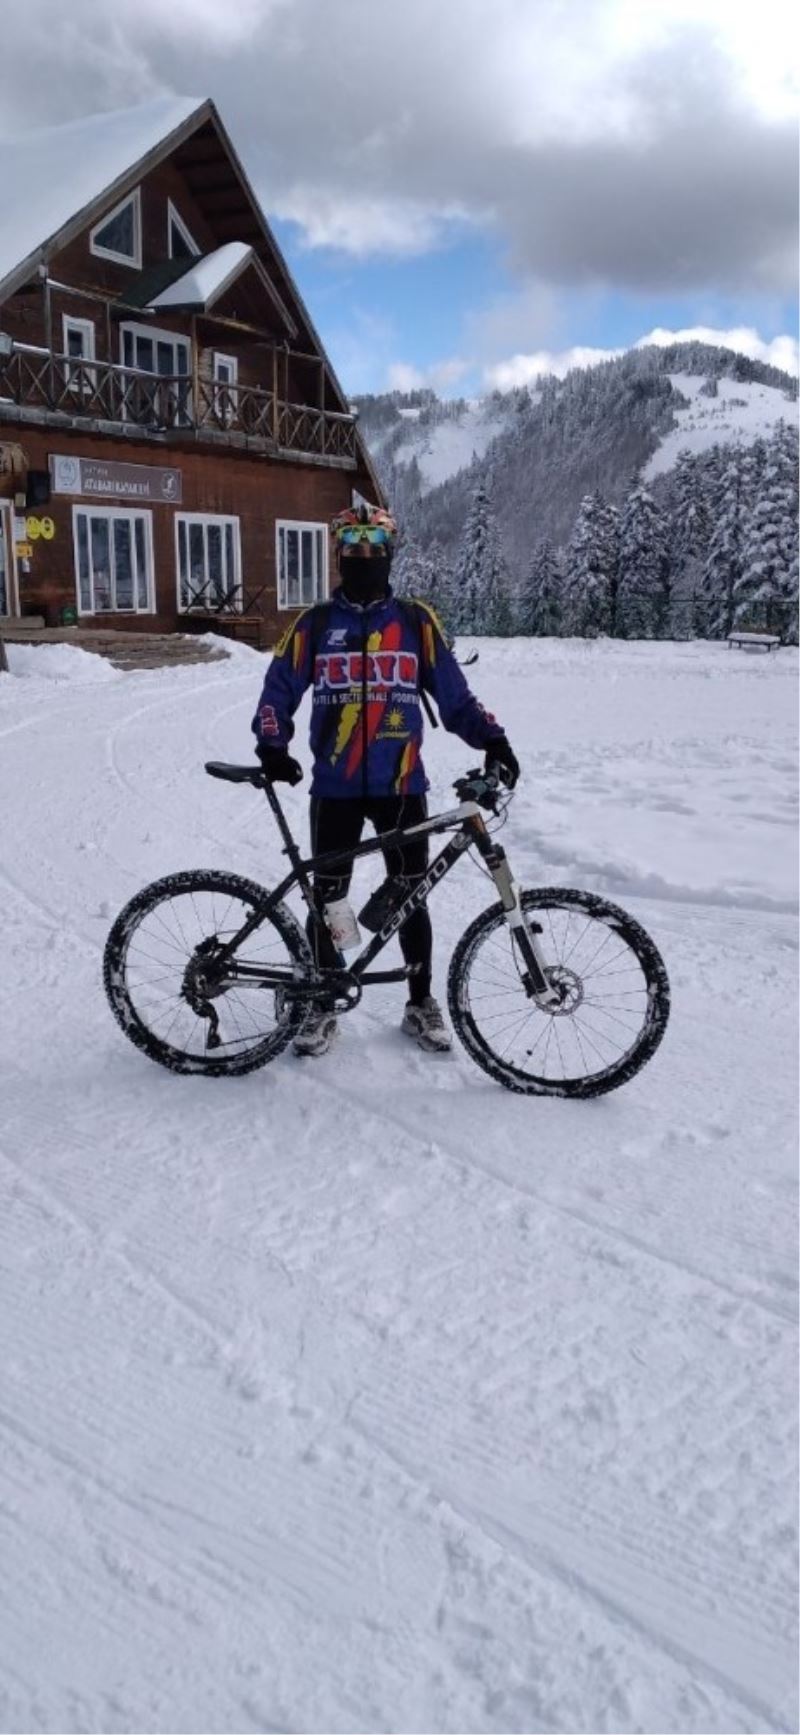 Macera tutkunu genç bisikletiyle kayak pistinde hız denemesi yaptı
